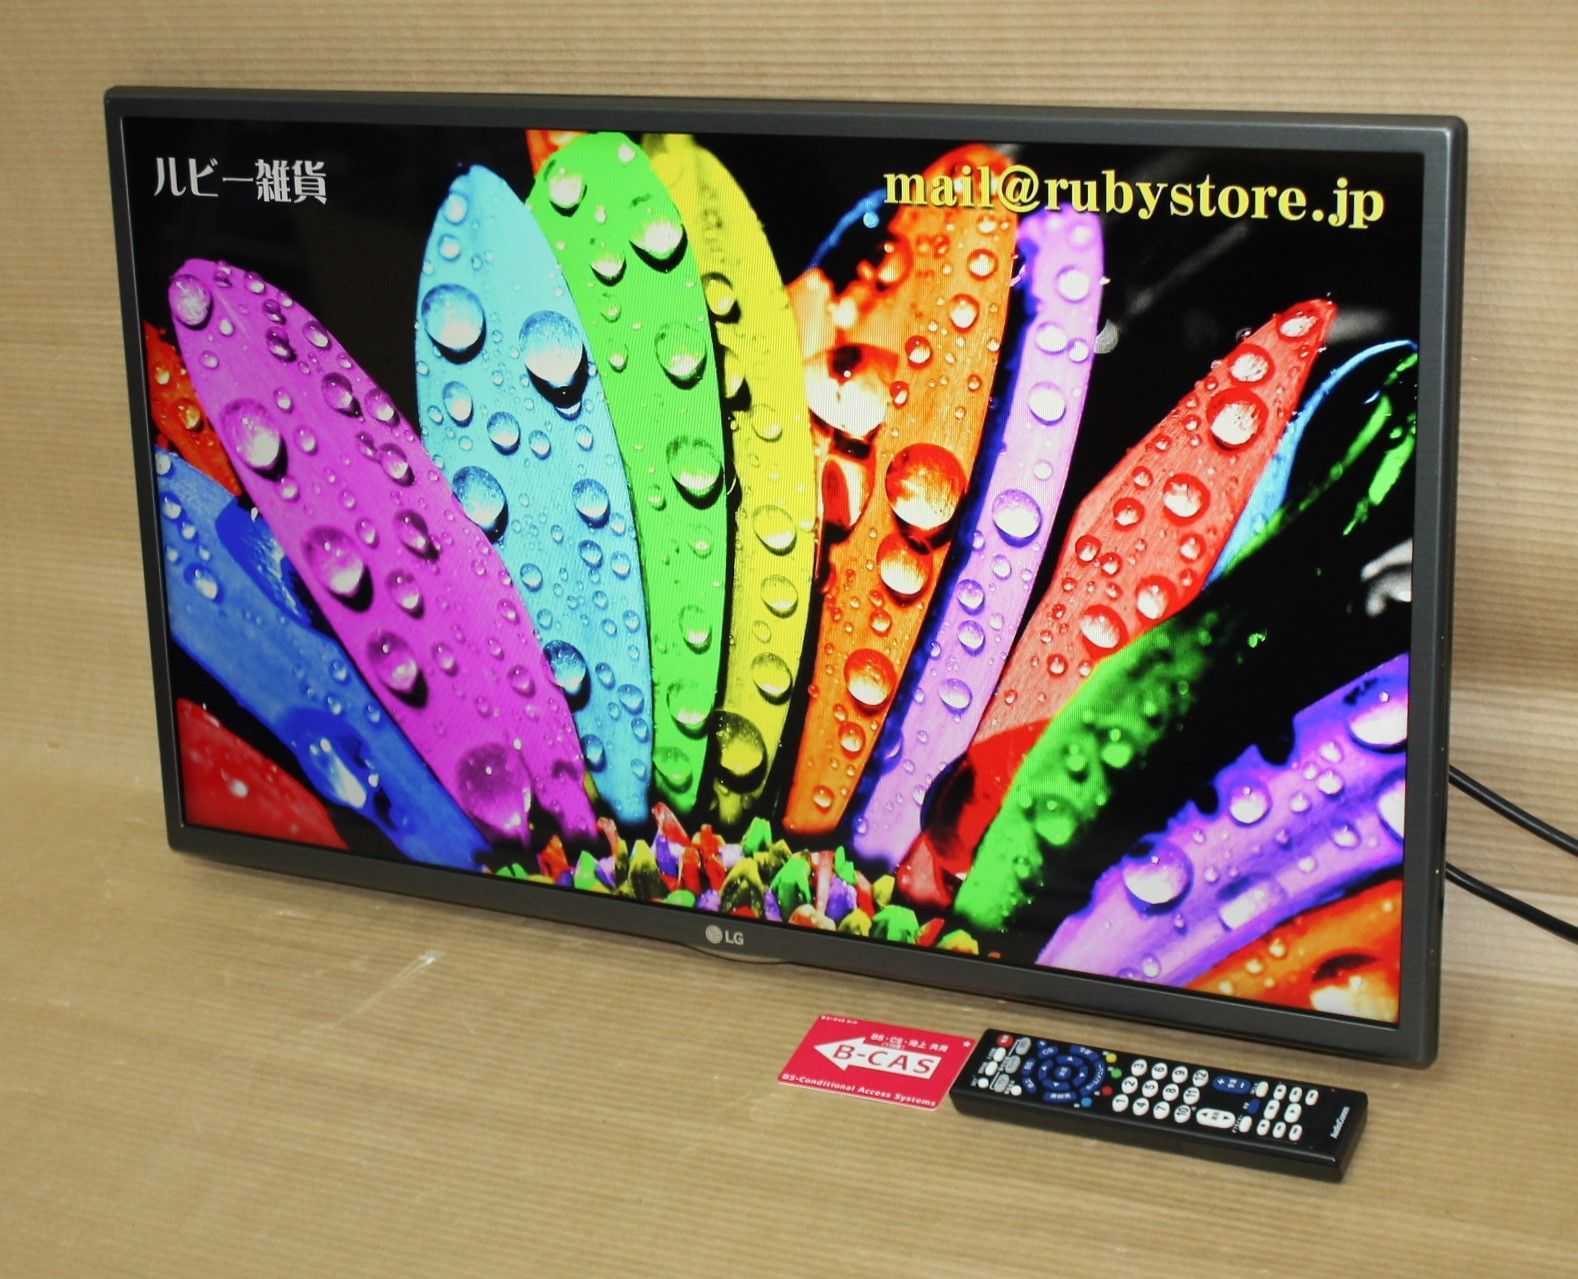 【本物格安】22型 TV デジタル液晶テレビ LG 22LS3500 テレビ